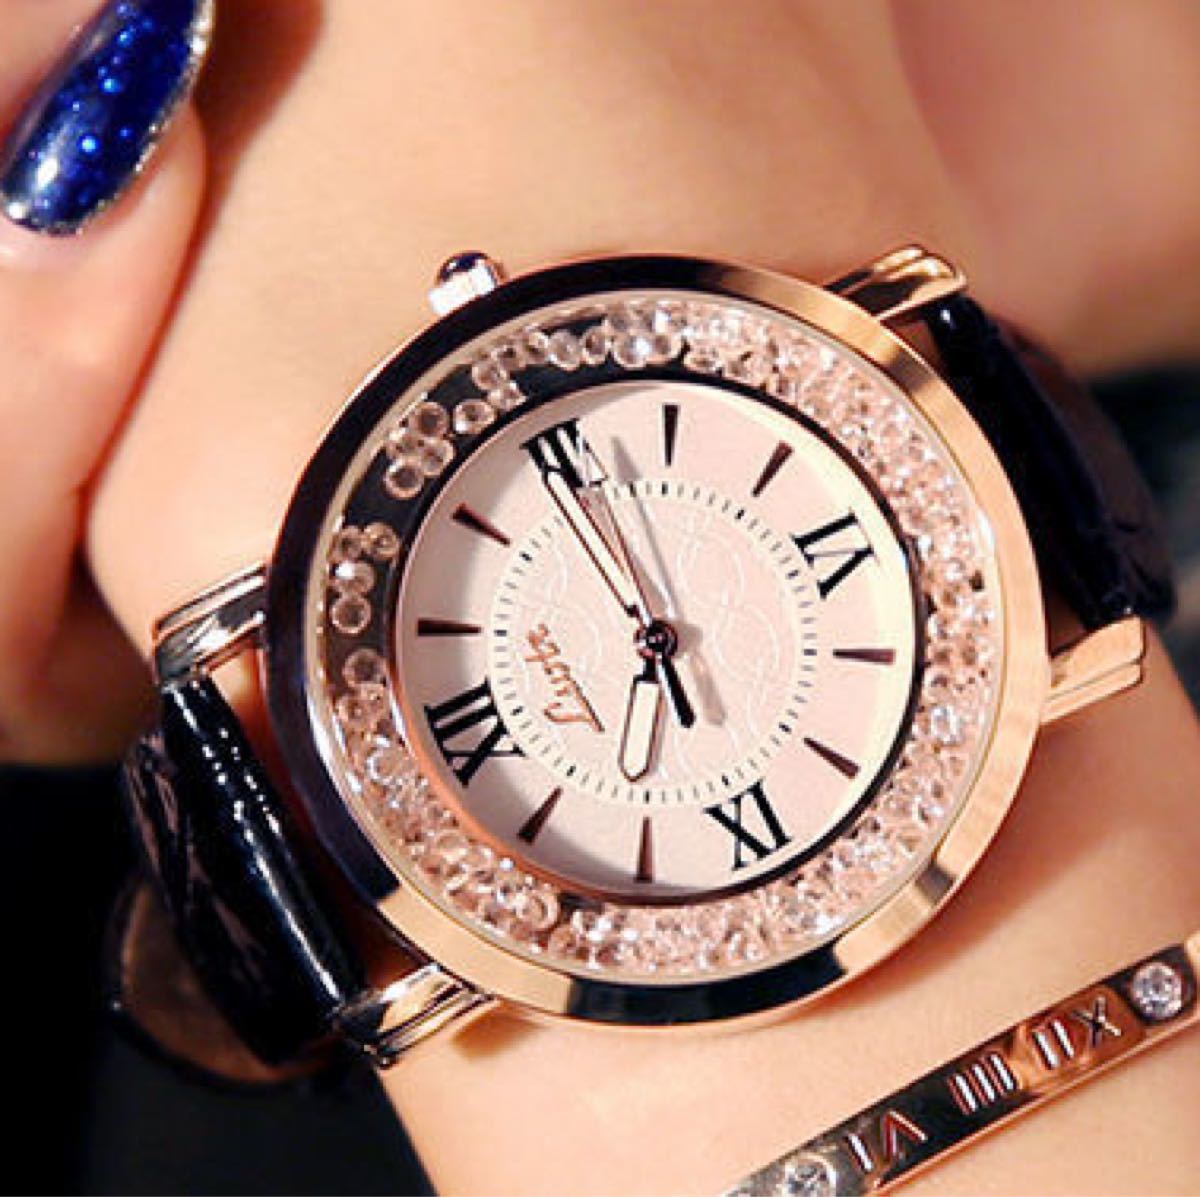 【冬セール開催中】 358【人気商品】レディース 腕時計 クォーツ 黒色 お洒落 アイテム 腕時計(アナログ)